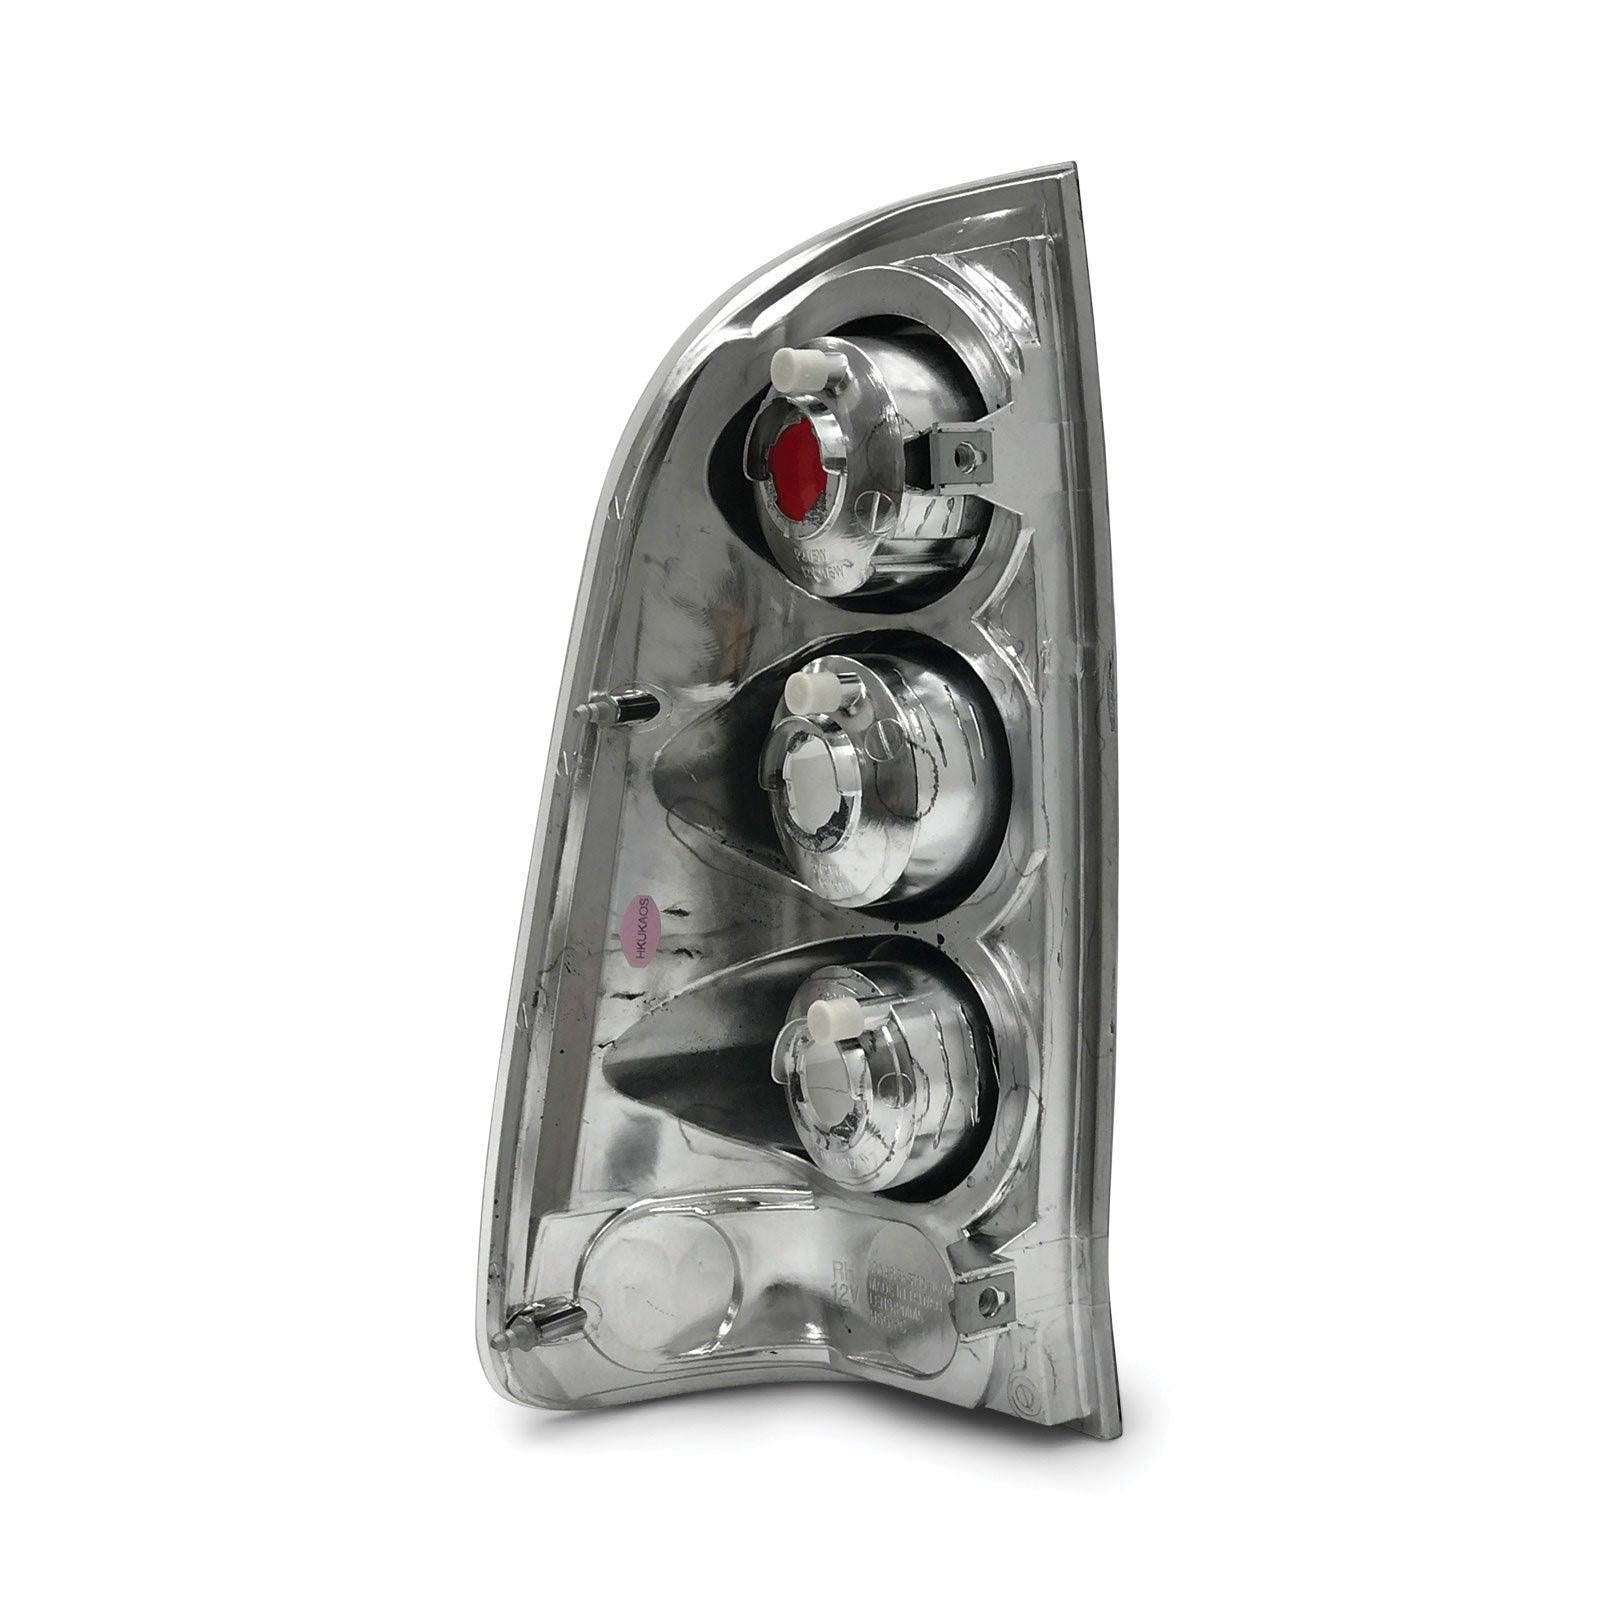 Upgrade Black Tail Lights PAIR Fits Toyota Hilux N70 SR5 2005-2014 - 4X4OC™